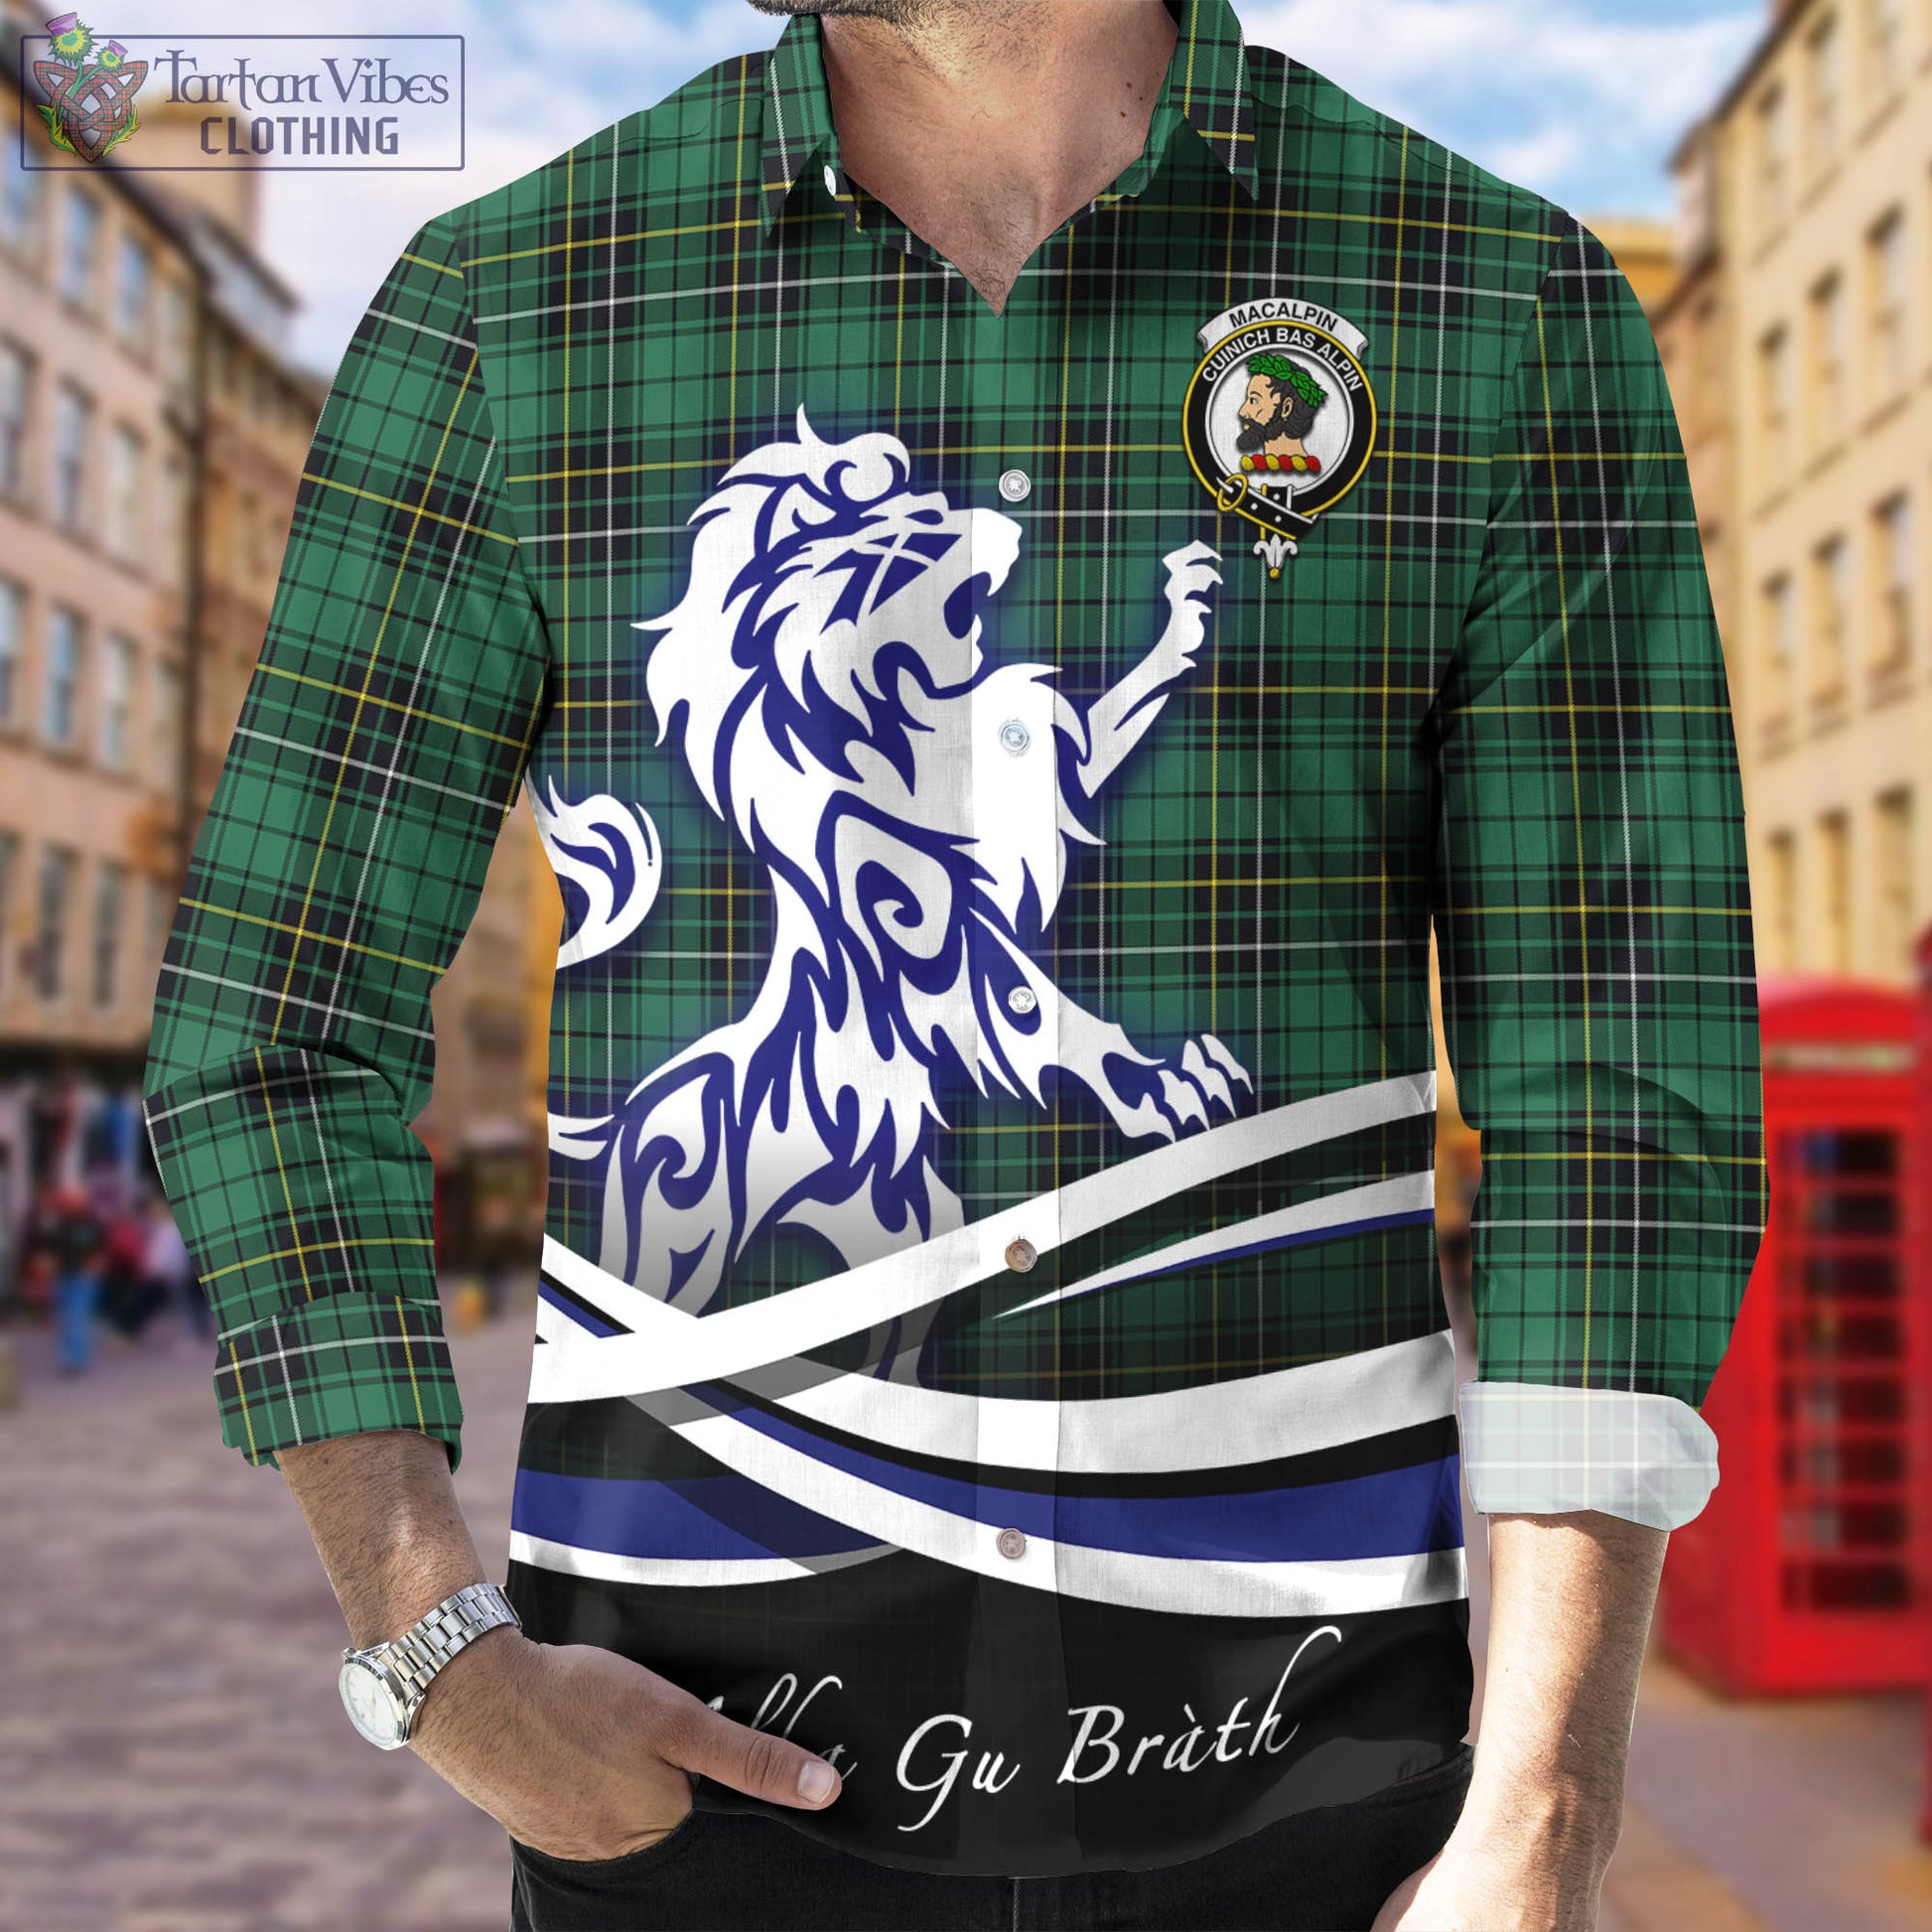 macalpin-ancient-tartan-long-sleeve-button-up-shirt-with-alba-gu-brath-regal-lion-emblem